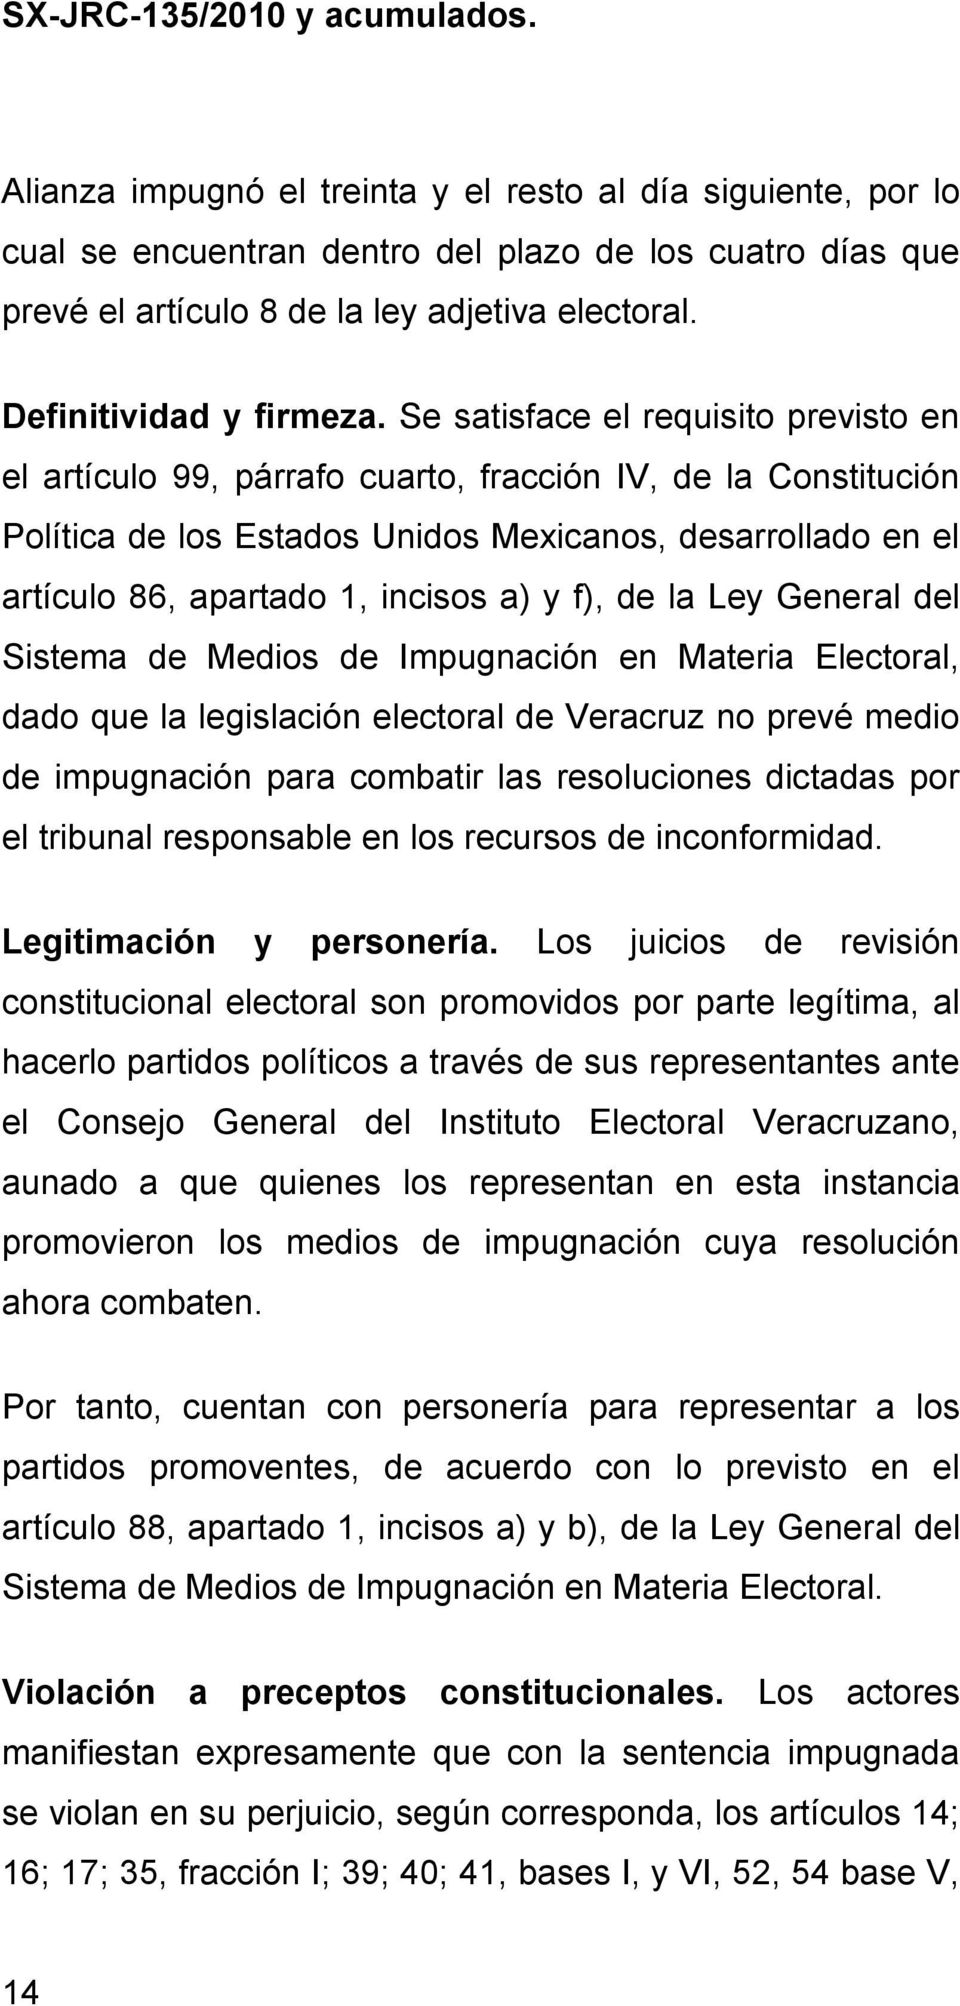 y f), de la Ley General del Sistema de Medios de Impugnación en Materia Electoral, dado que la legislación electoral de Veracruz no prevé medio de impugnación para combatir las resoluciones dictadas